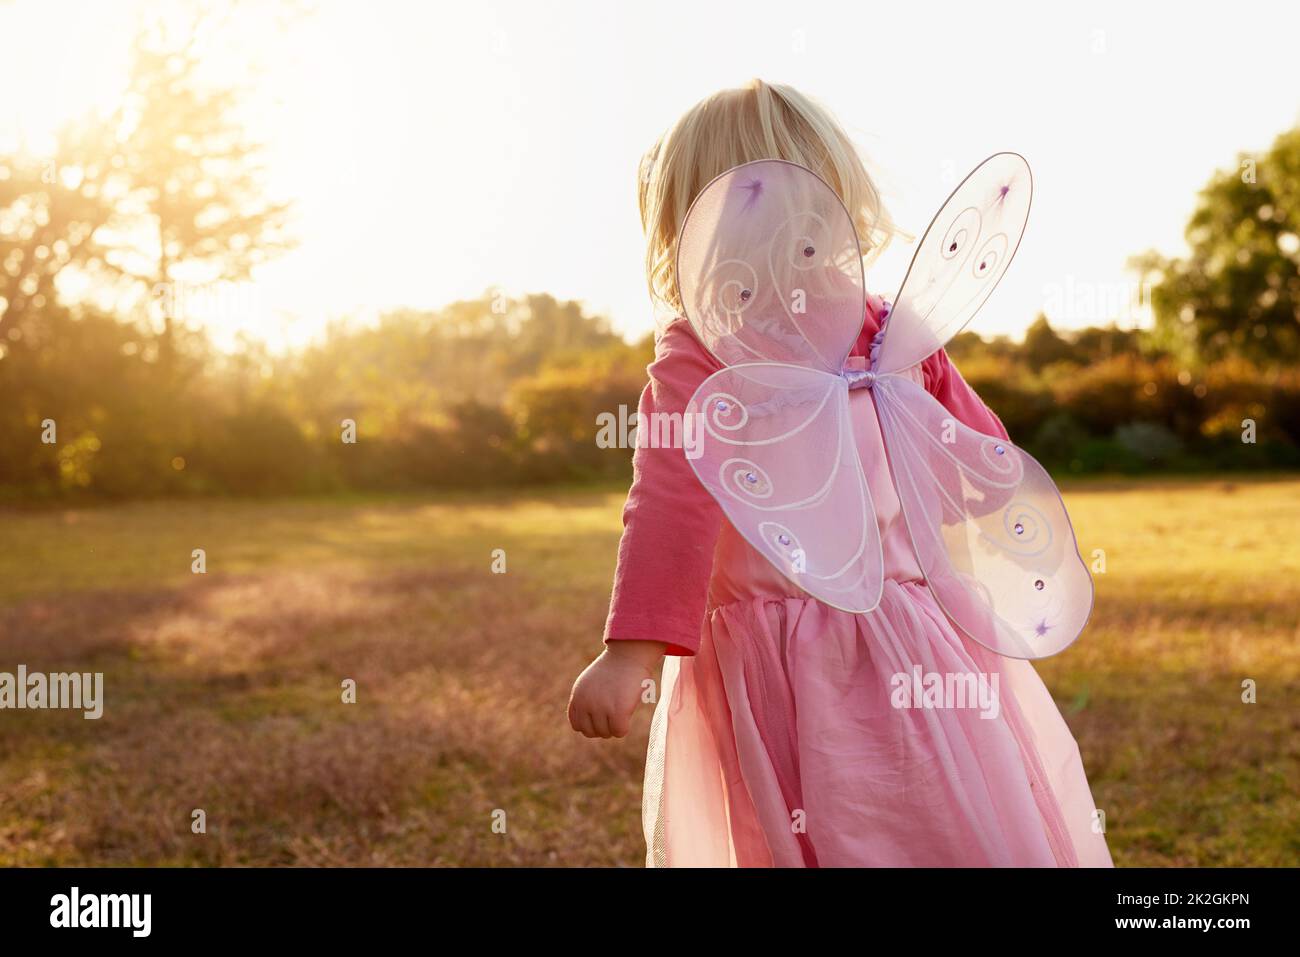 Kinder erkunden die Welt durch die Kraft ihrer Vorstellungskraft. Rückansicht eines kleinen Mädchens, das als Fee verkleidet ist und den Tag draußen genießt. Stockfoto